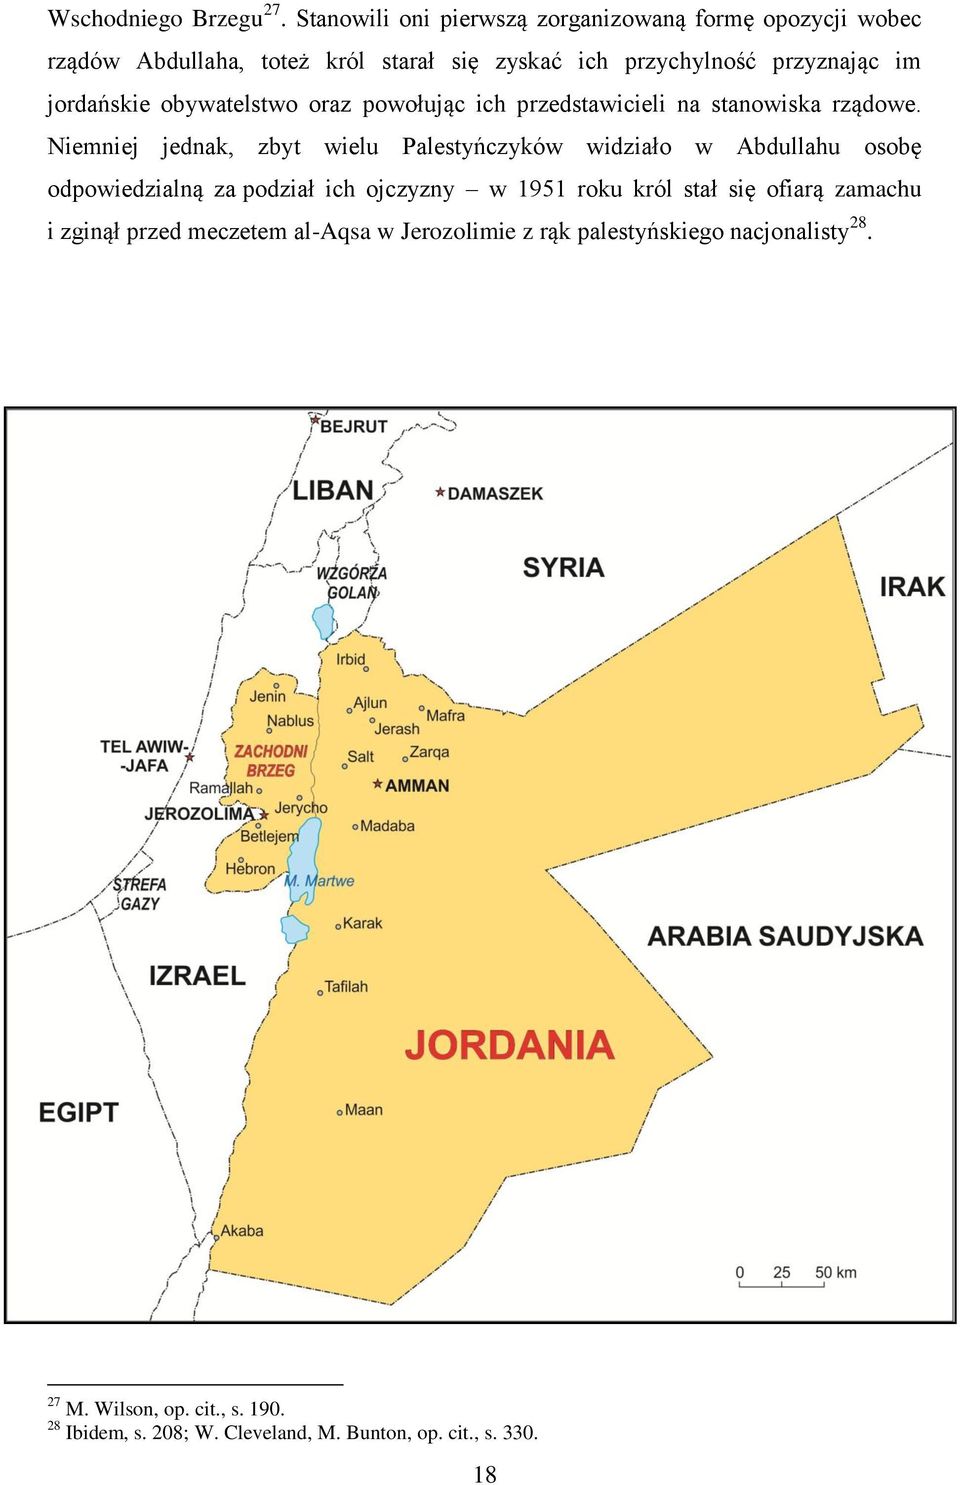 jordańskie obywatelstwo oraz powołując ich przedstawicieli na stanowiska rządowe.